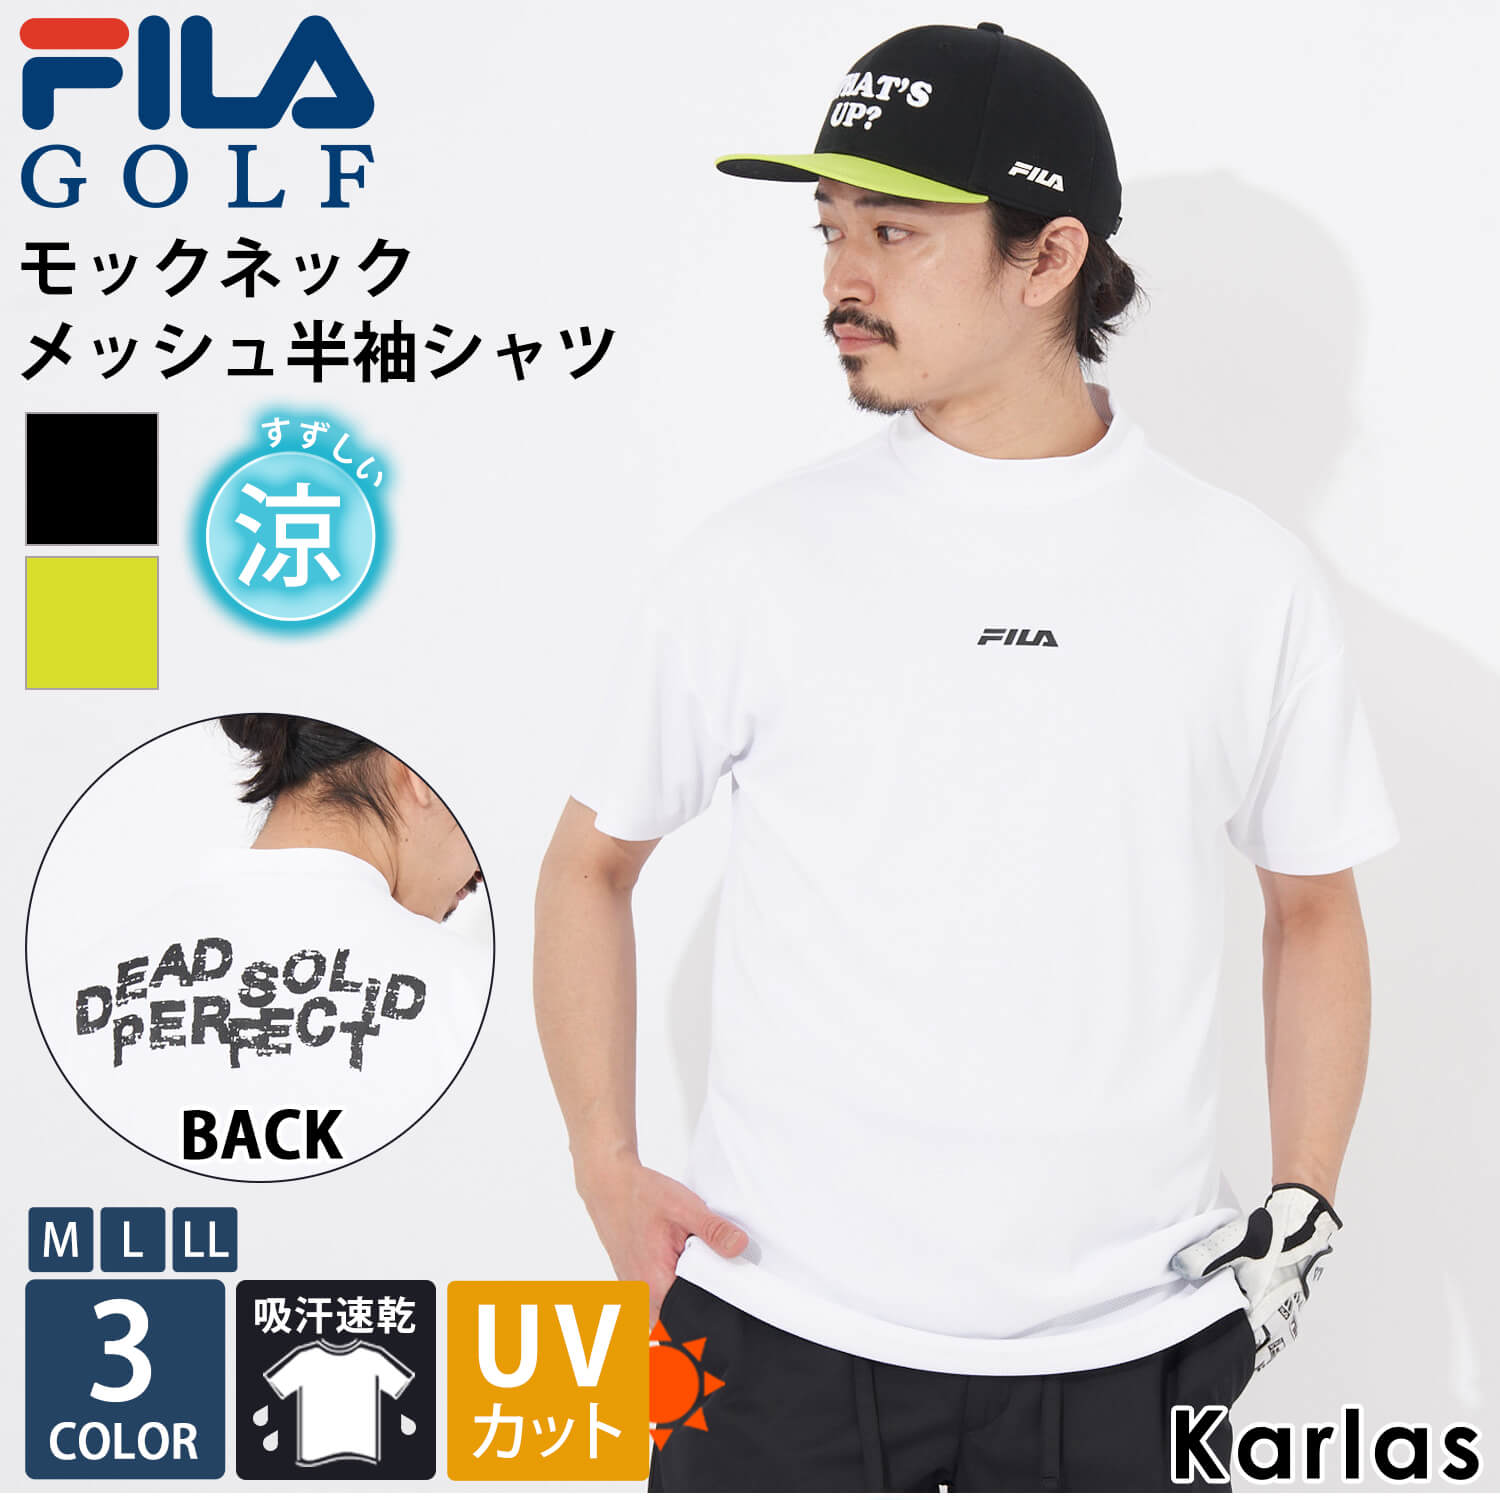 FILA GOLF フィラゴルフ Tシャツ 半袖 メンズ 接触冷感 UVカット